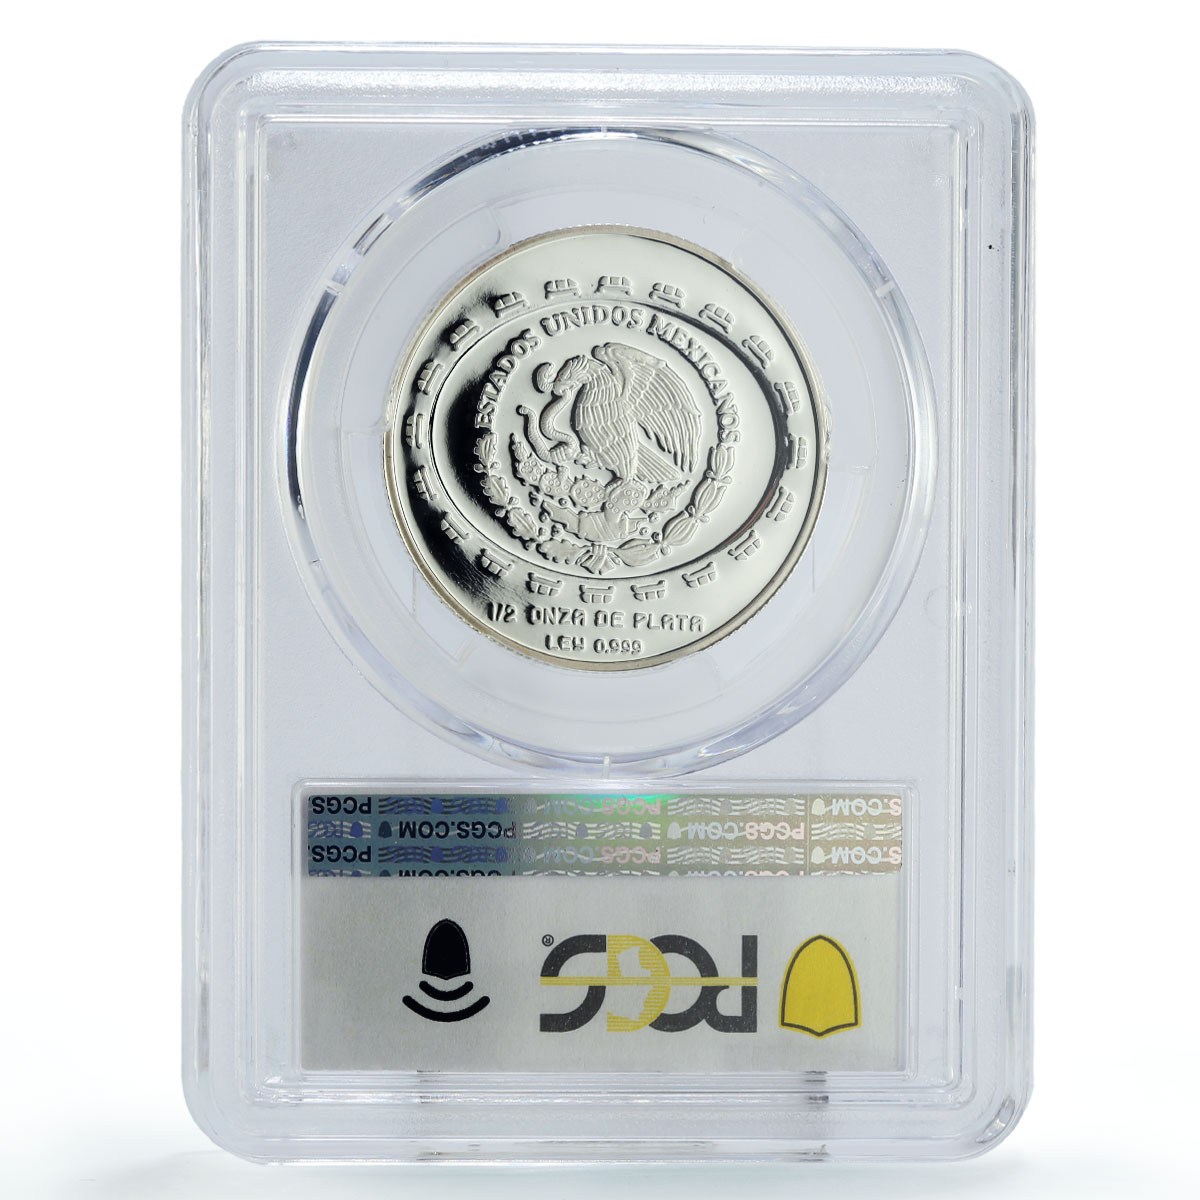 Mexico 2 pesos Precolombina Disco Muerte Death Disc PR69 PCGS silver coin 1997